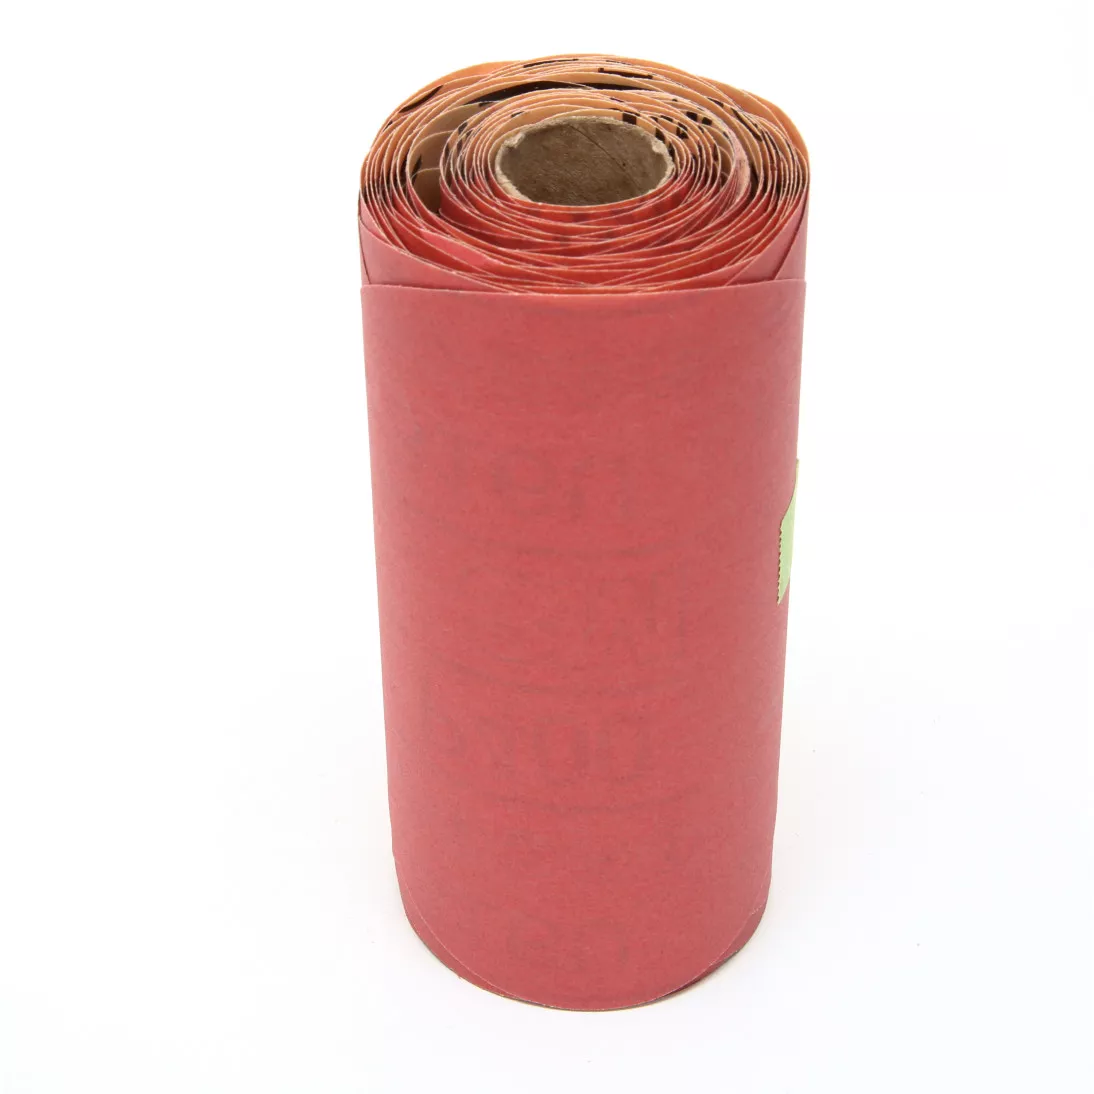 3M™ Red Abrasive Stikit™ Disc, 01108, 6 in, P400 grade, 100 discs per
roll, 6 rolls per case